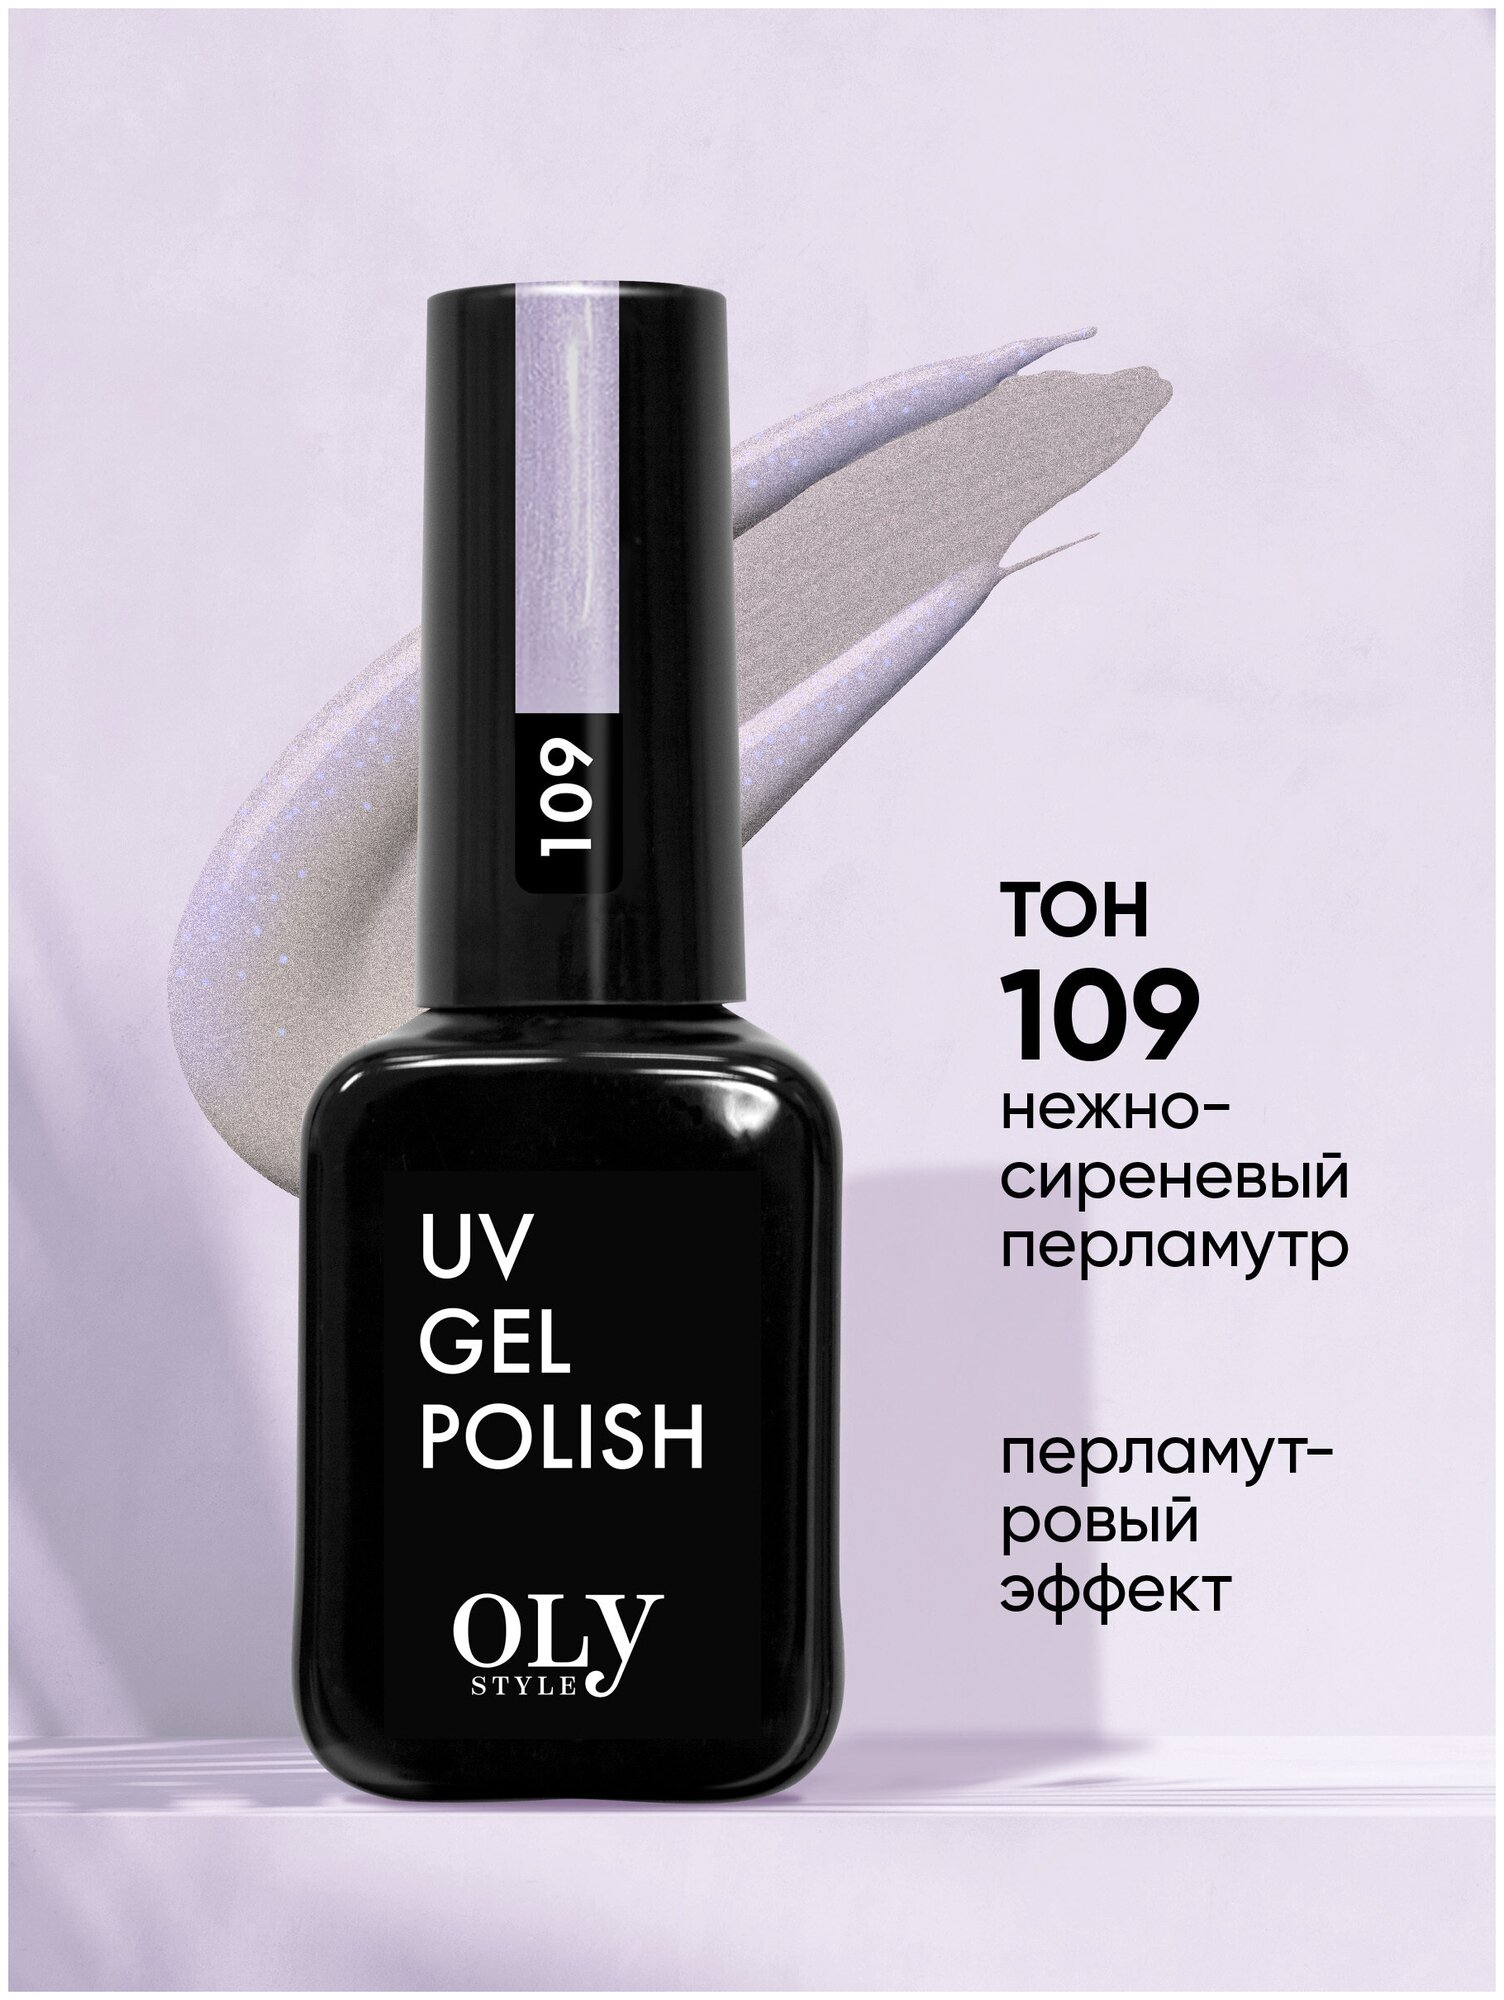 Olystyle Гель-лак для ногтей OLS UV, тон 109 нежно-сиреневый перламутр